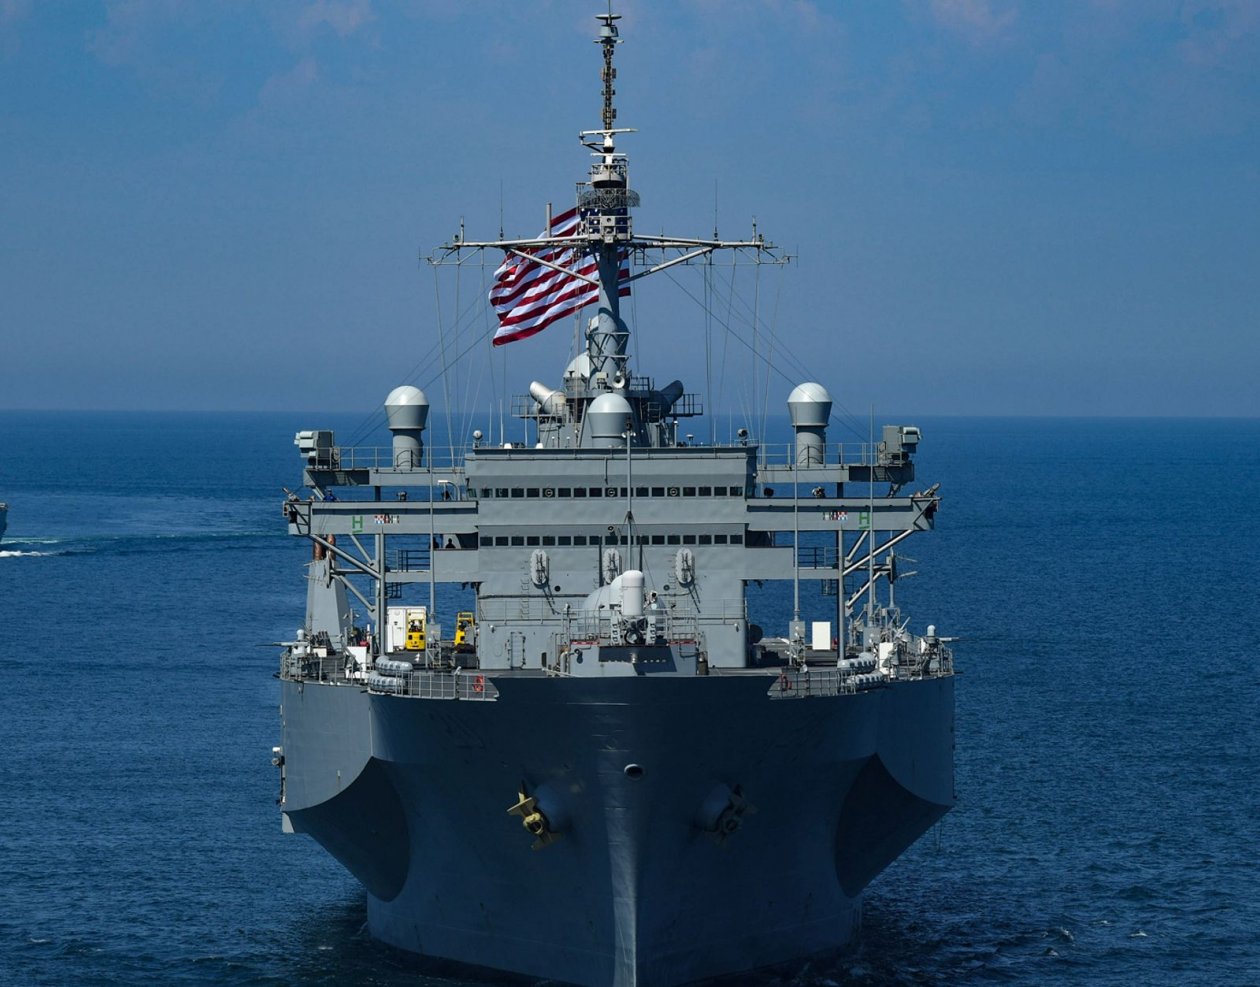   البحرية الأمريكية: تدريبات الجيش الصينى فى المحيطات لا تمثل تهديدًا لنا